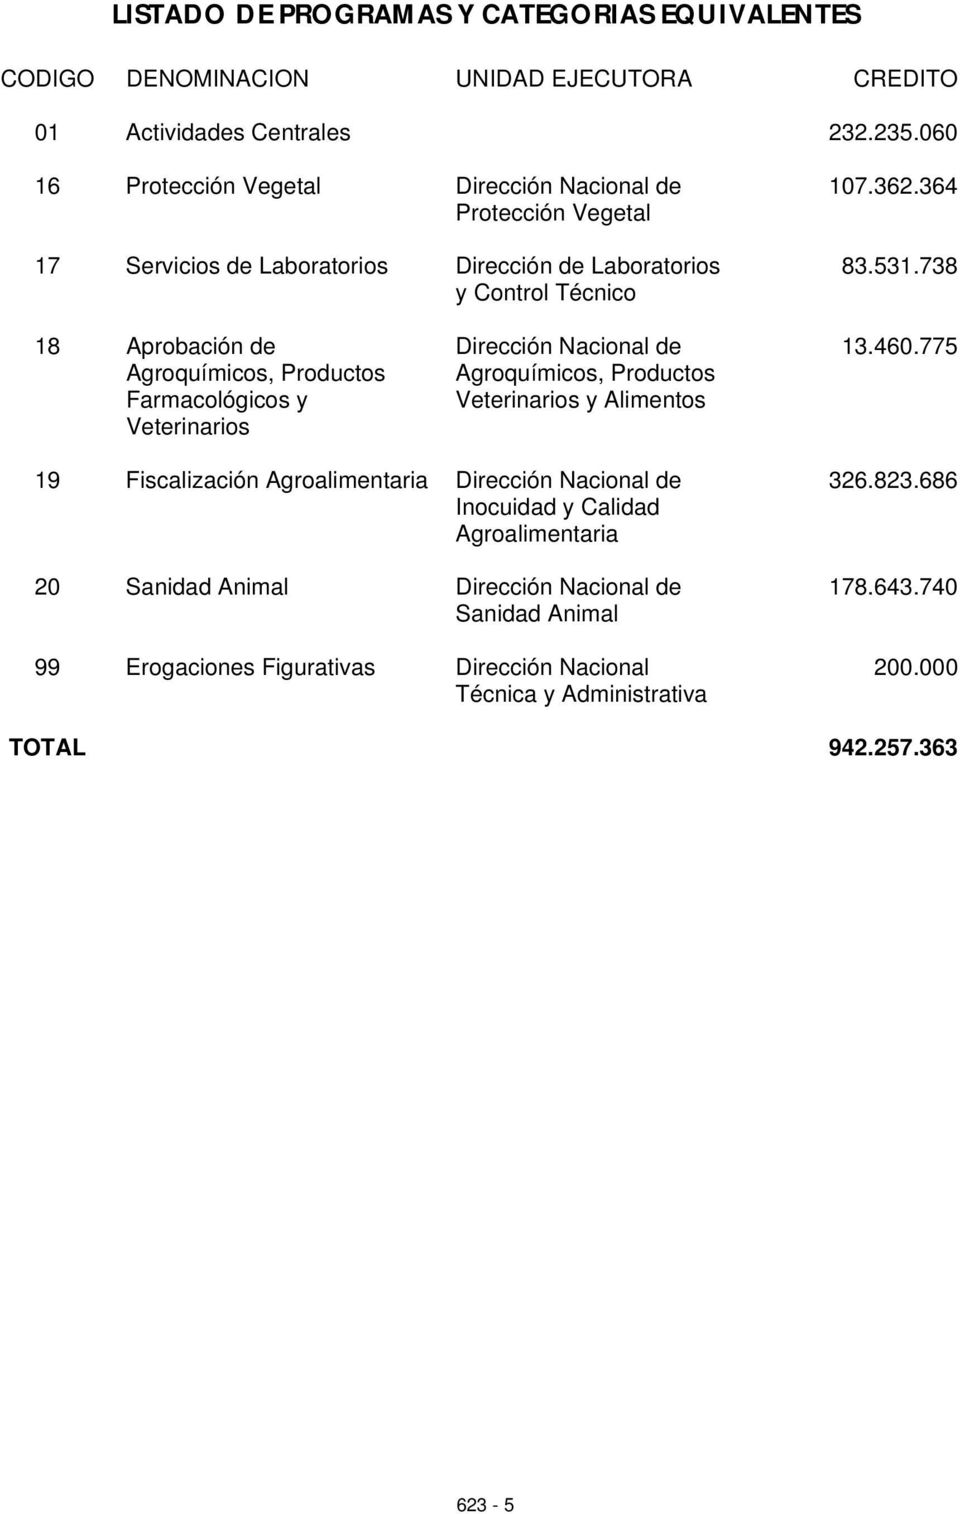 738 18 probación de groquímicos, roductos Farmacológicos y Veterinarios Dirección acional de groquímicos, roductos Veterinarios y limentos 13.460.